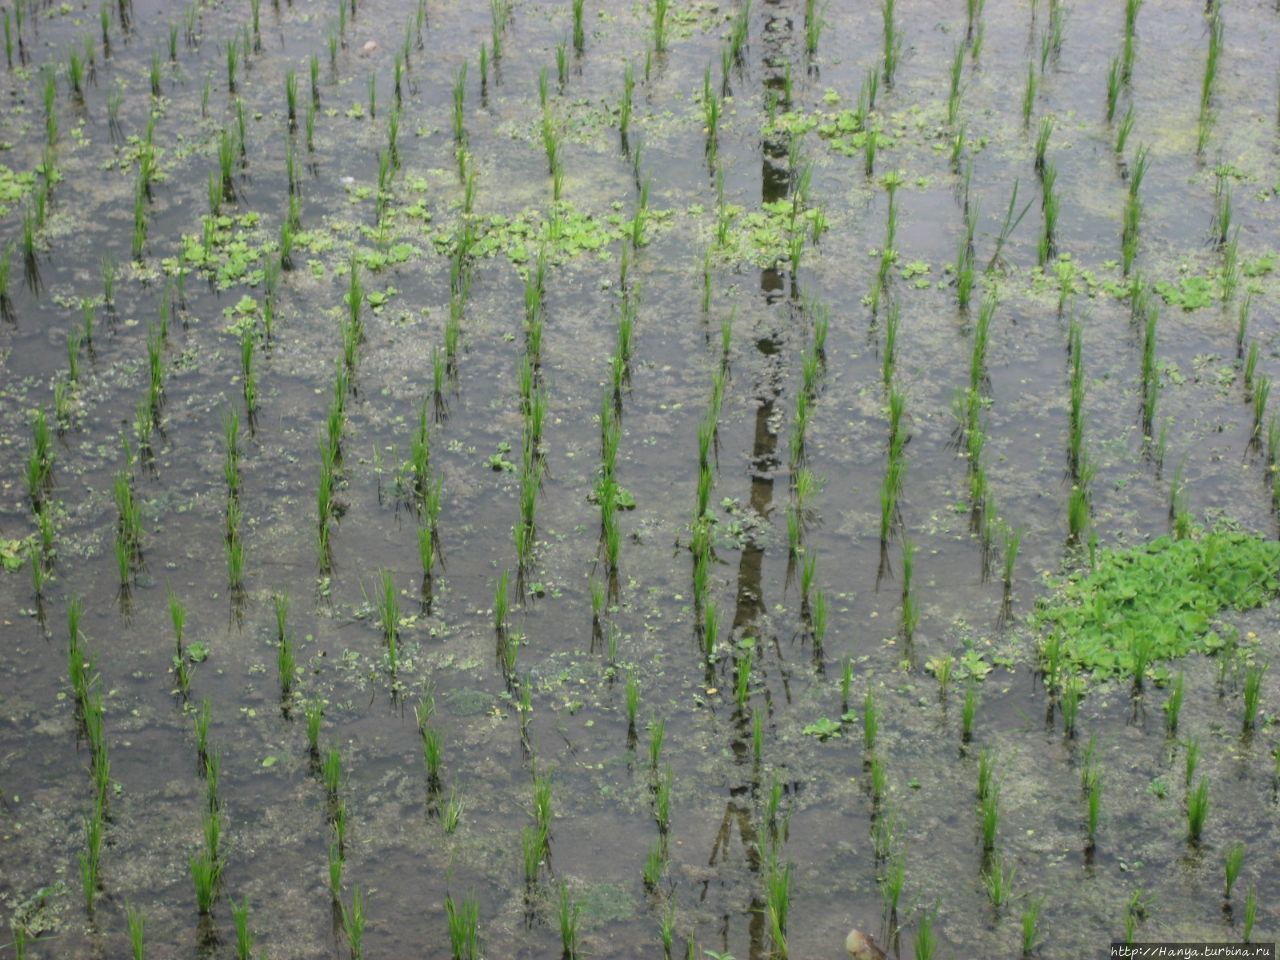 Рисовые поля Мундук Булеленг, Индонезия